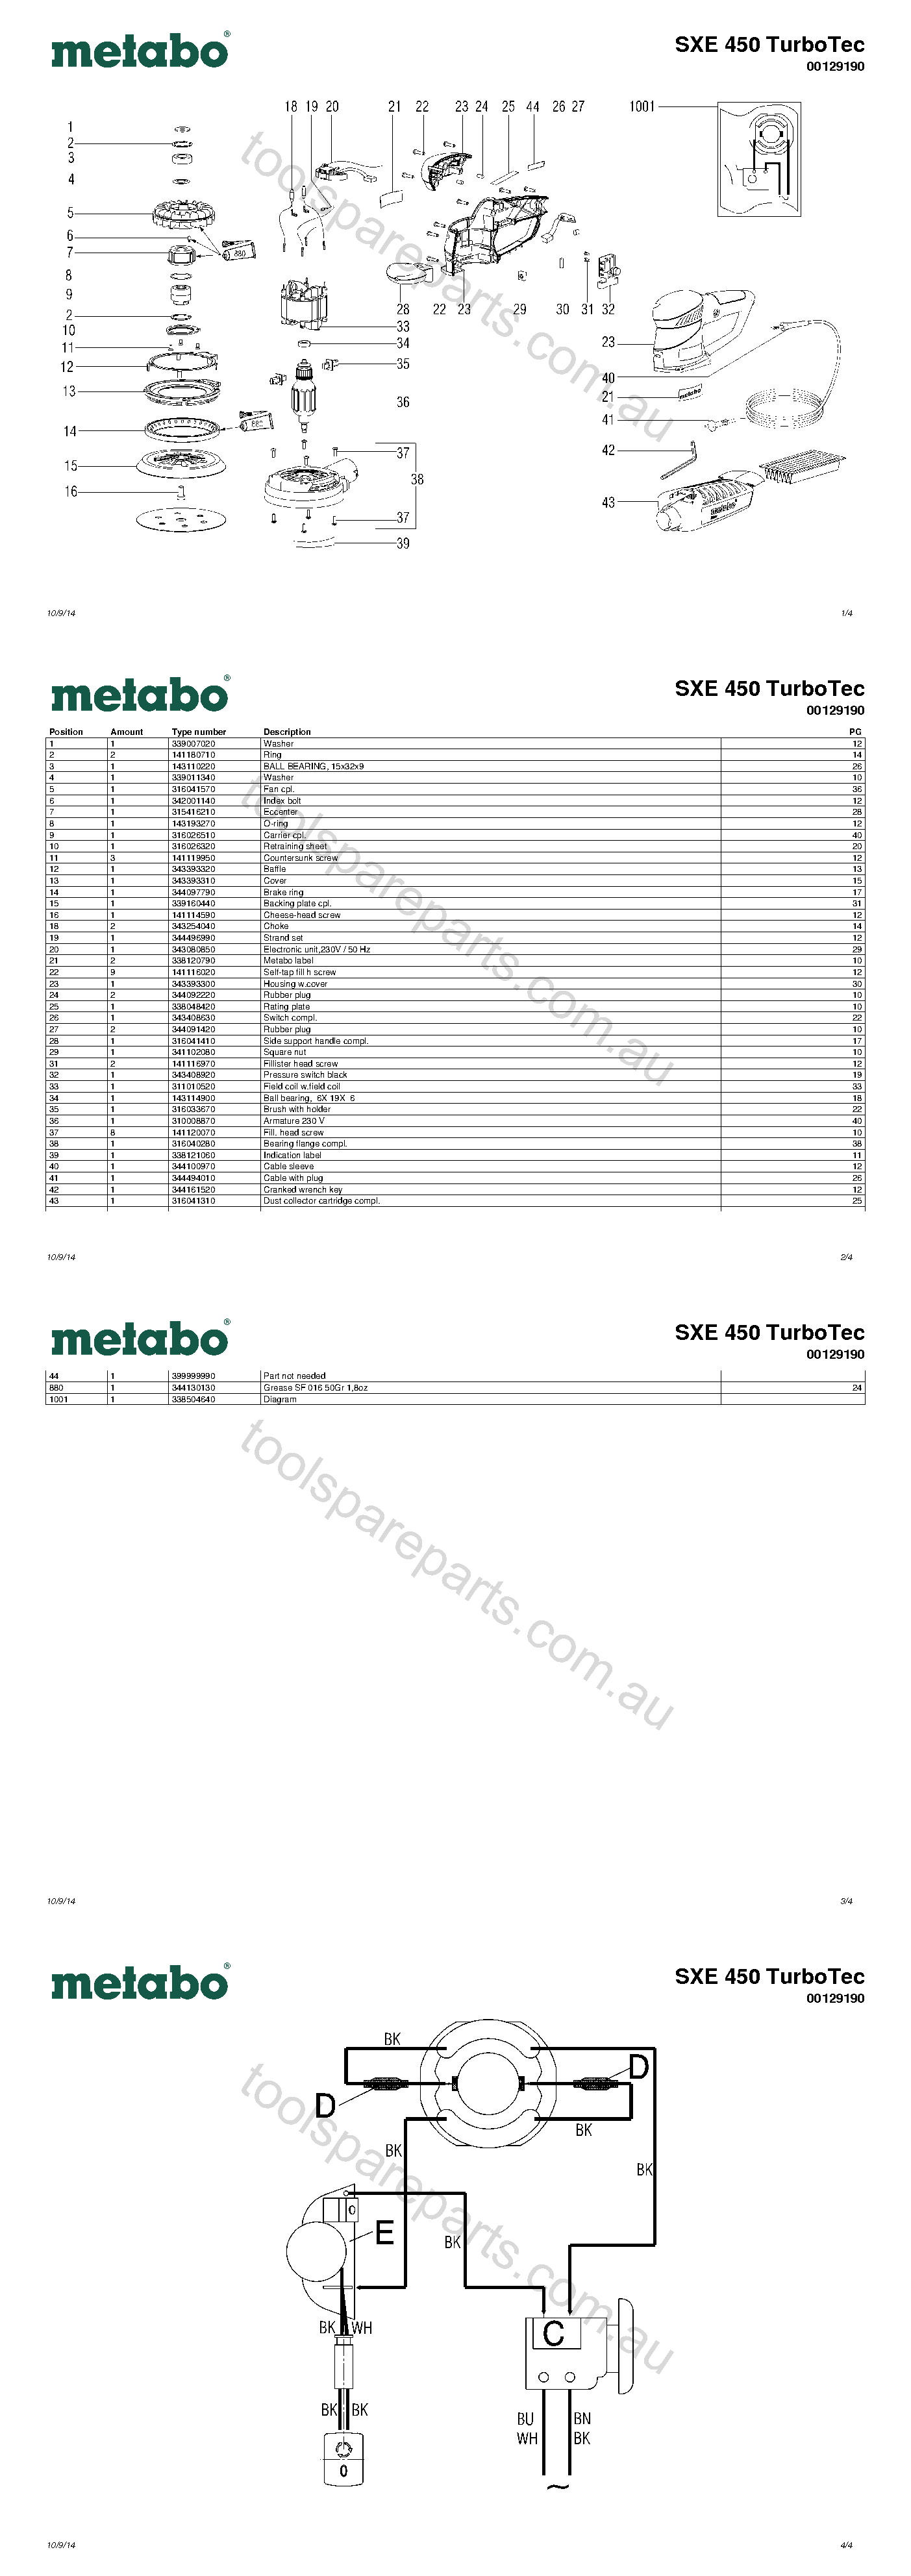 Metabo SXE 450 TurboTec 00129190  Diagram 1